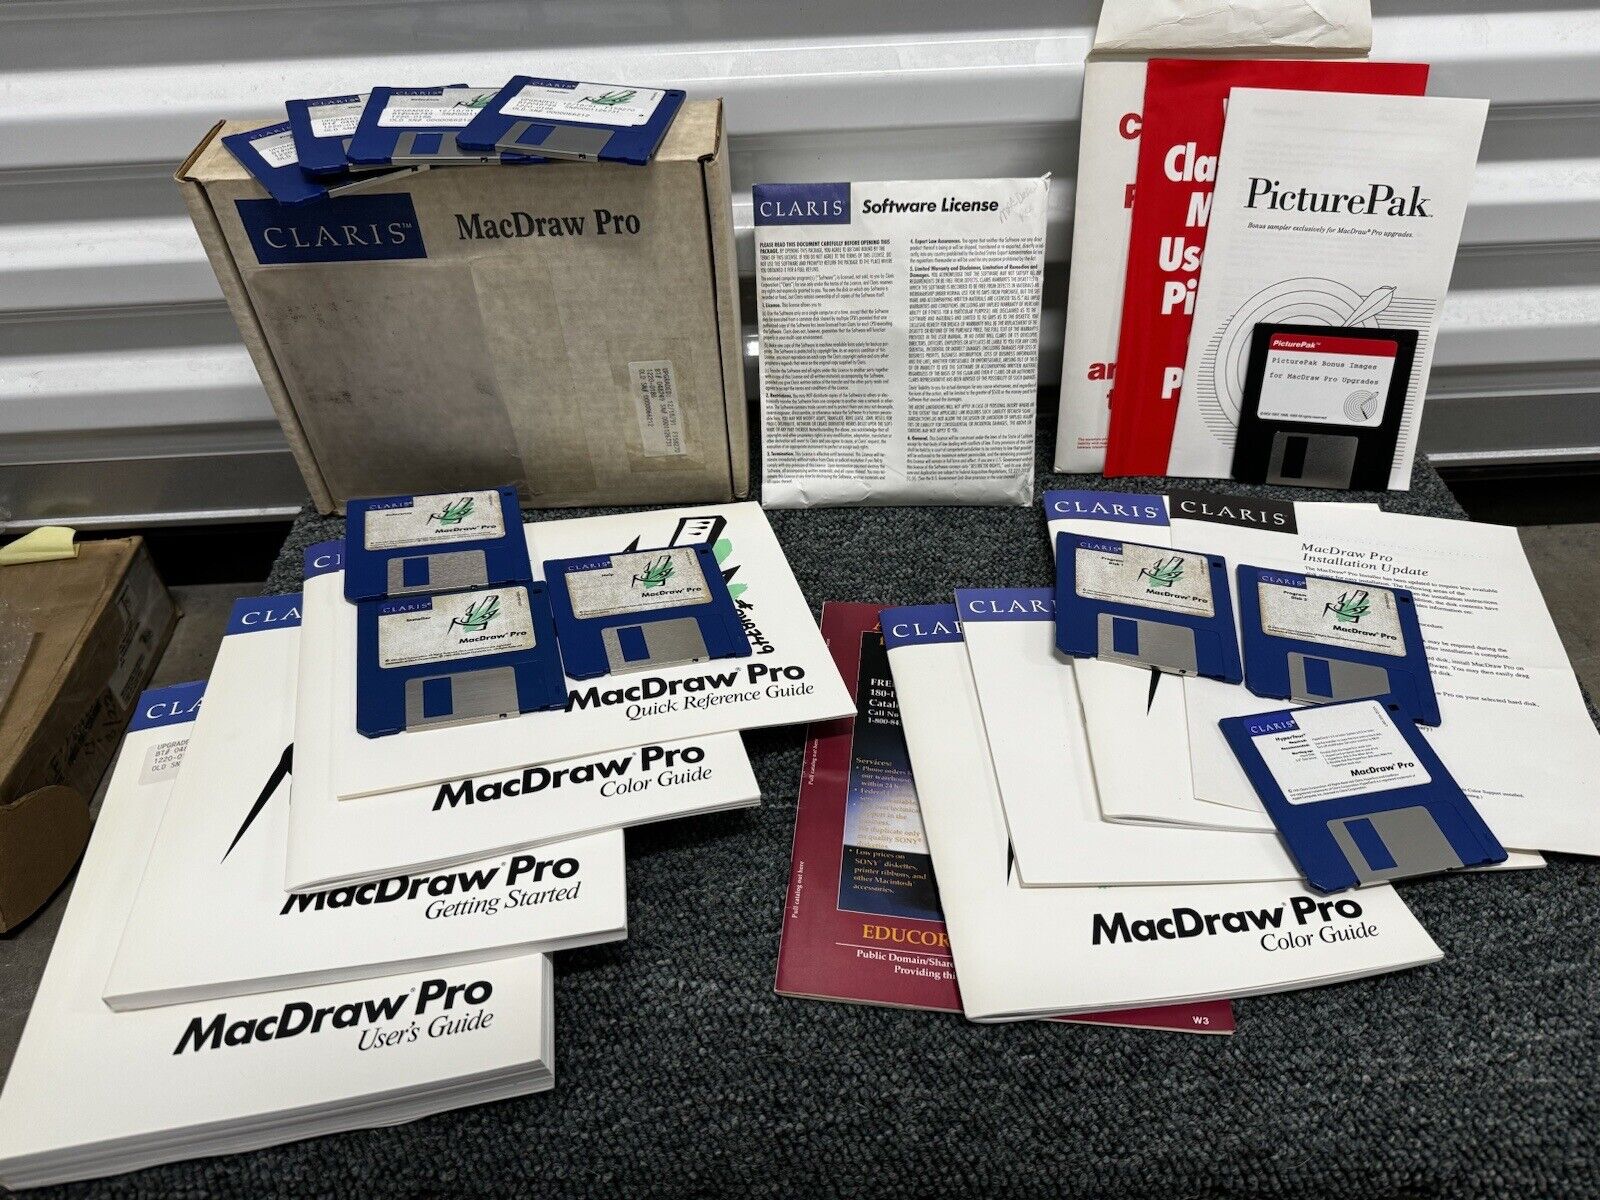 Claris 1991 Macdraw Pro + Picturepak Bonus Images & Manuals